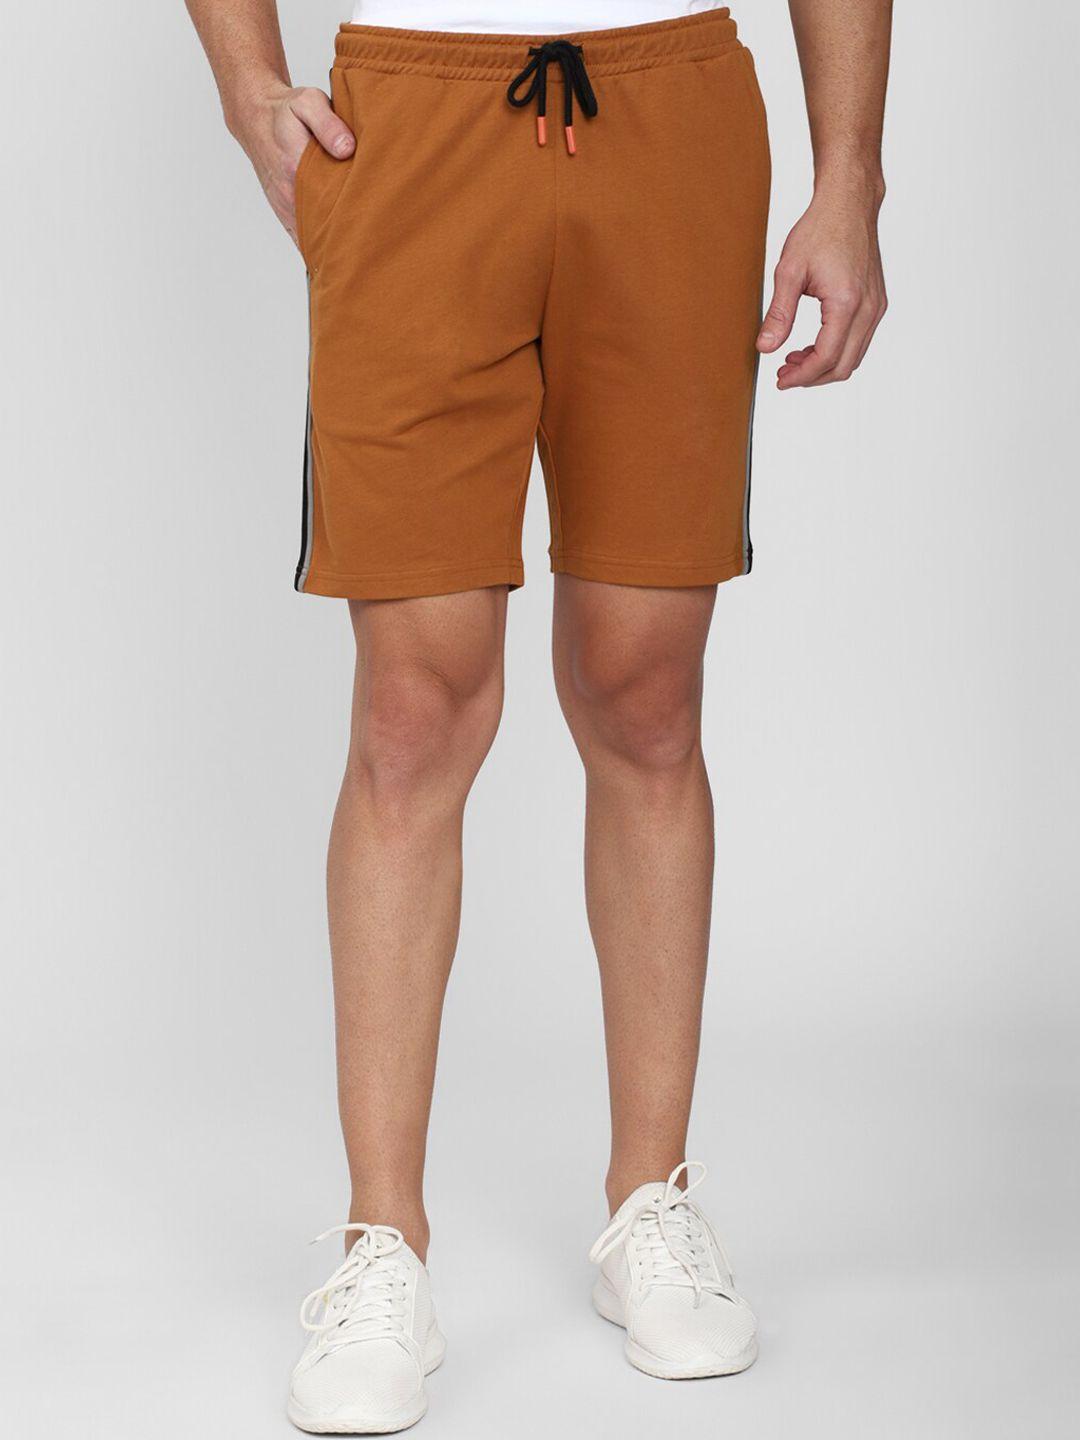 peter england men brown shorts